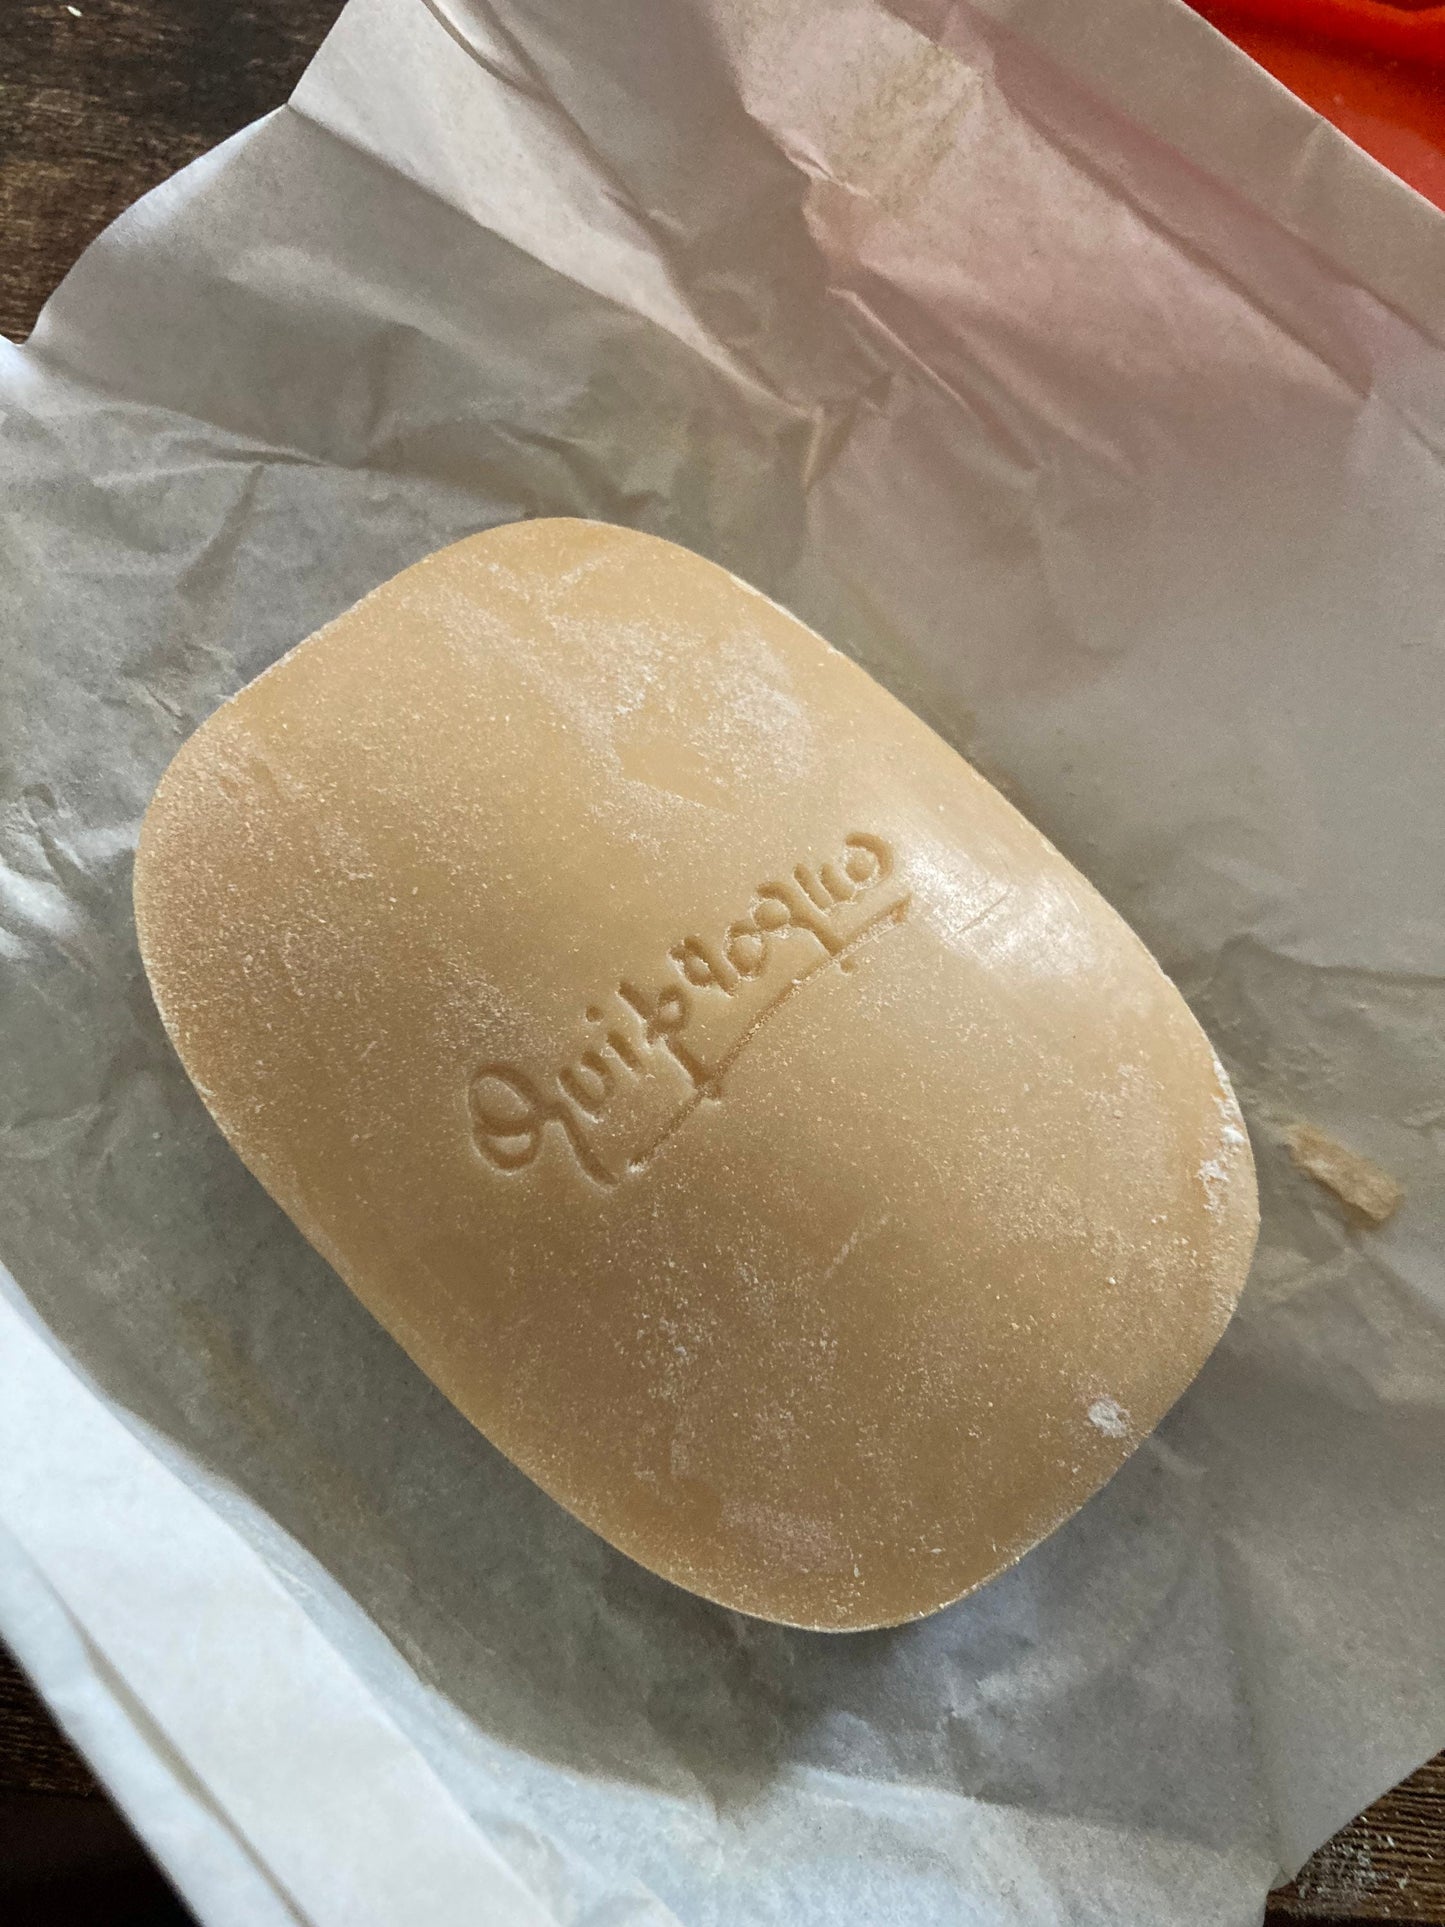 Quiproquo GRES Paris wrapped unused soap in red plastic case vintage cosmetics